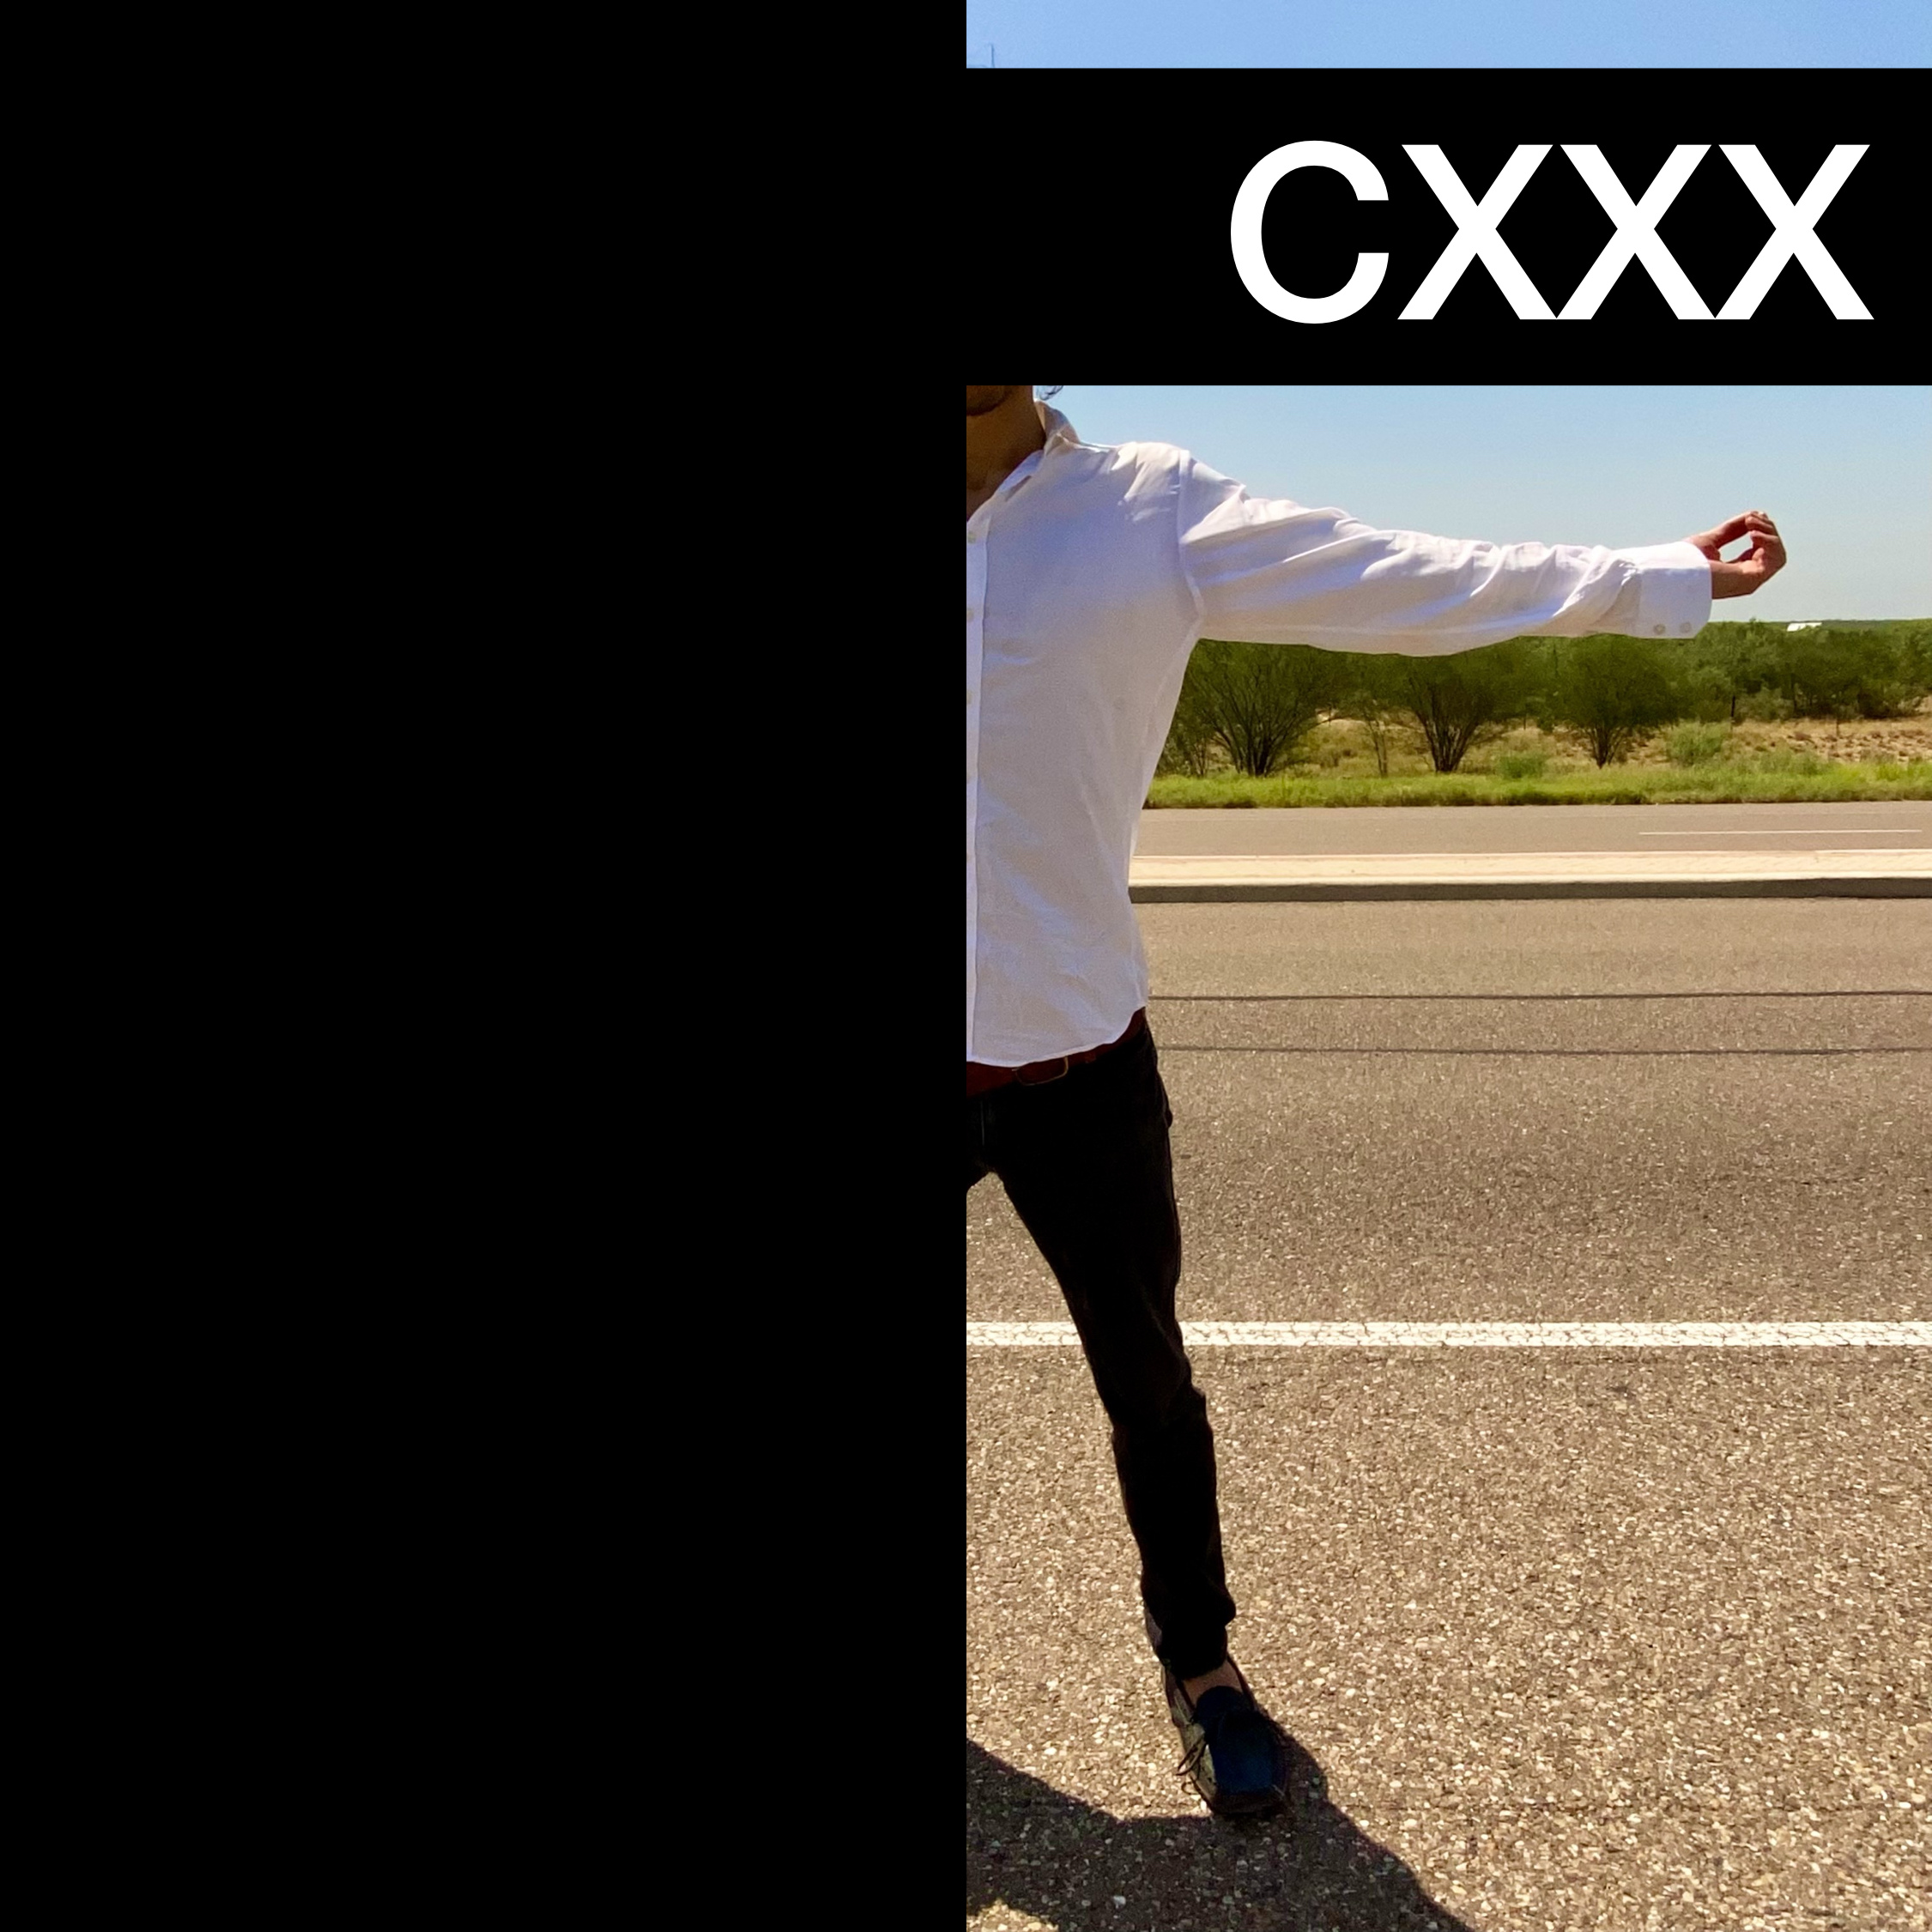 #CXXX